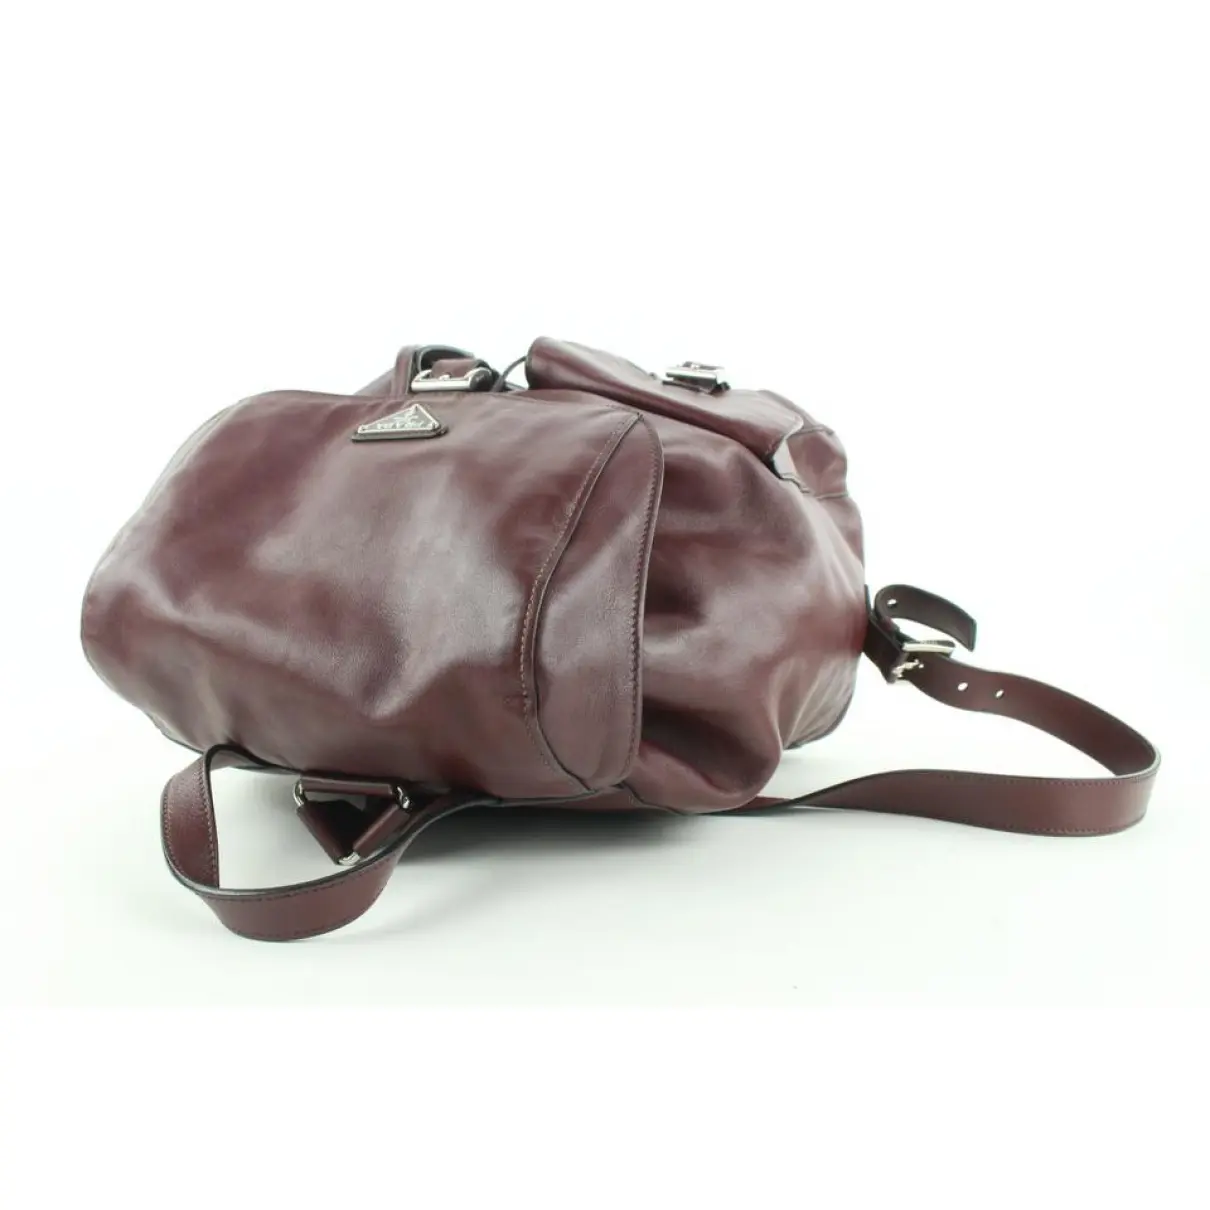 Leather backpack Prada